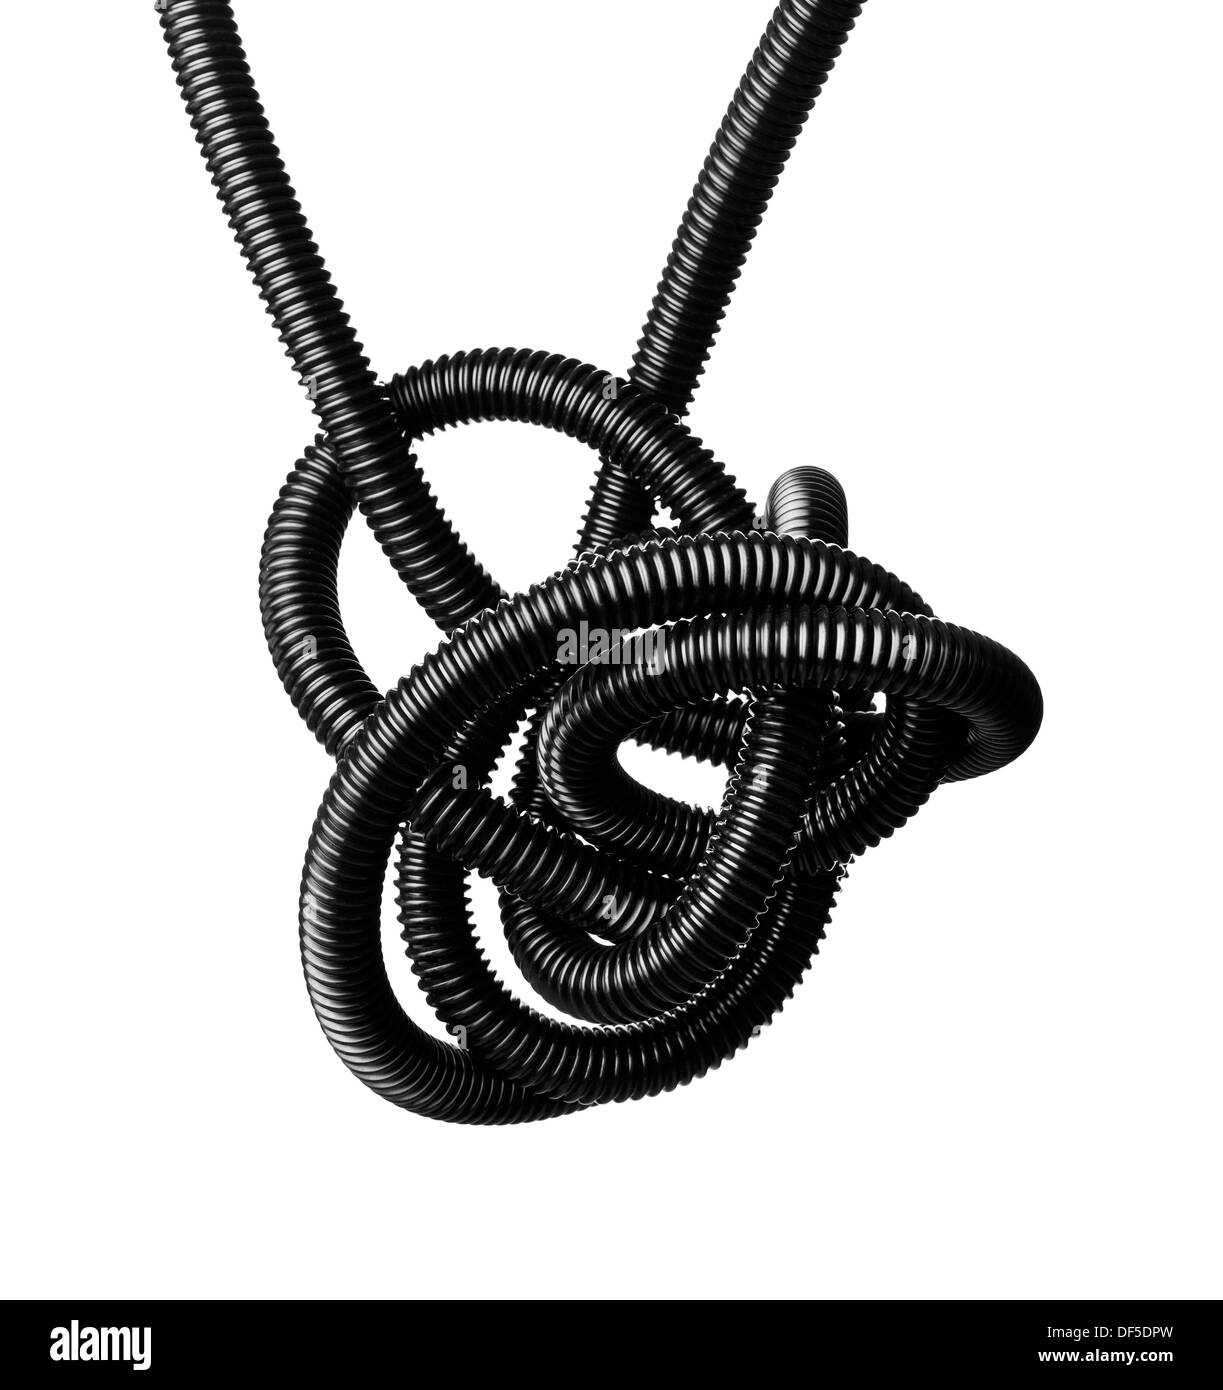 Schwarz / weiß Bild eines schwarzen Wirren flexiblen Schlauches. Stockfoto